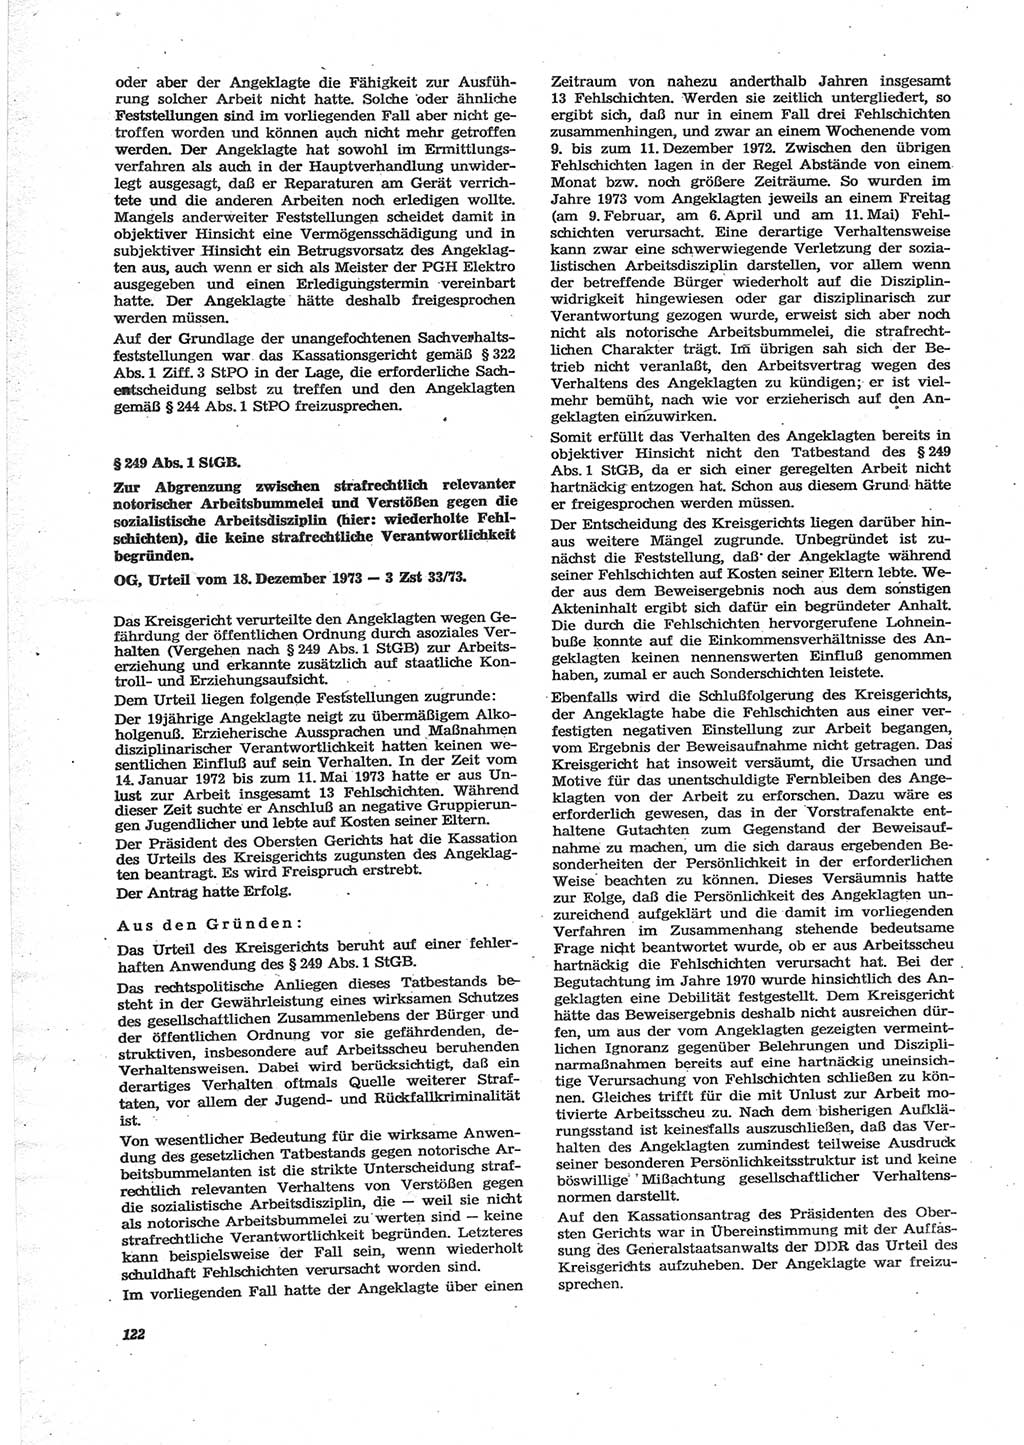 Neue Justiz (NJ), Zeitschrift für Recht und Rechtswissenschaft [Deutsche Demokratische Republik (DDR)], 28. Jahrgang 1974, Seite 122 (NJ DDR 1974, S. 122)